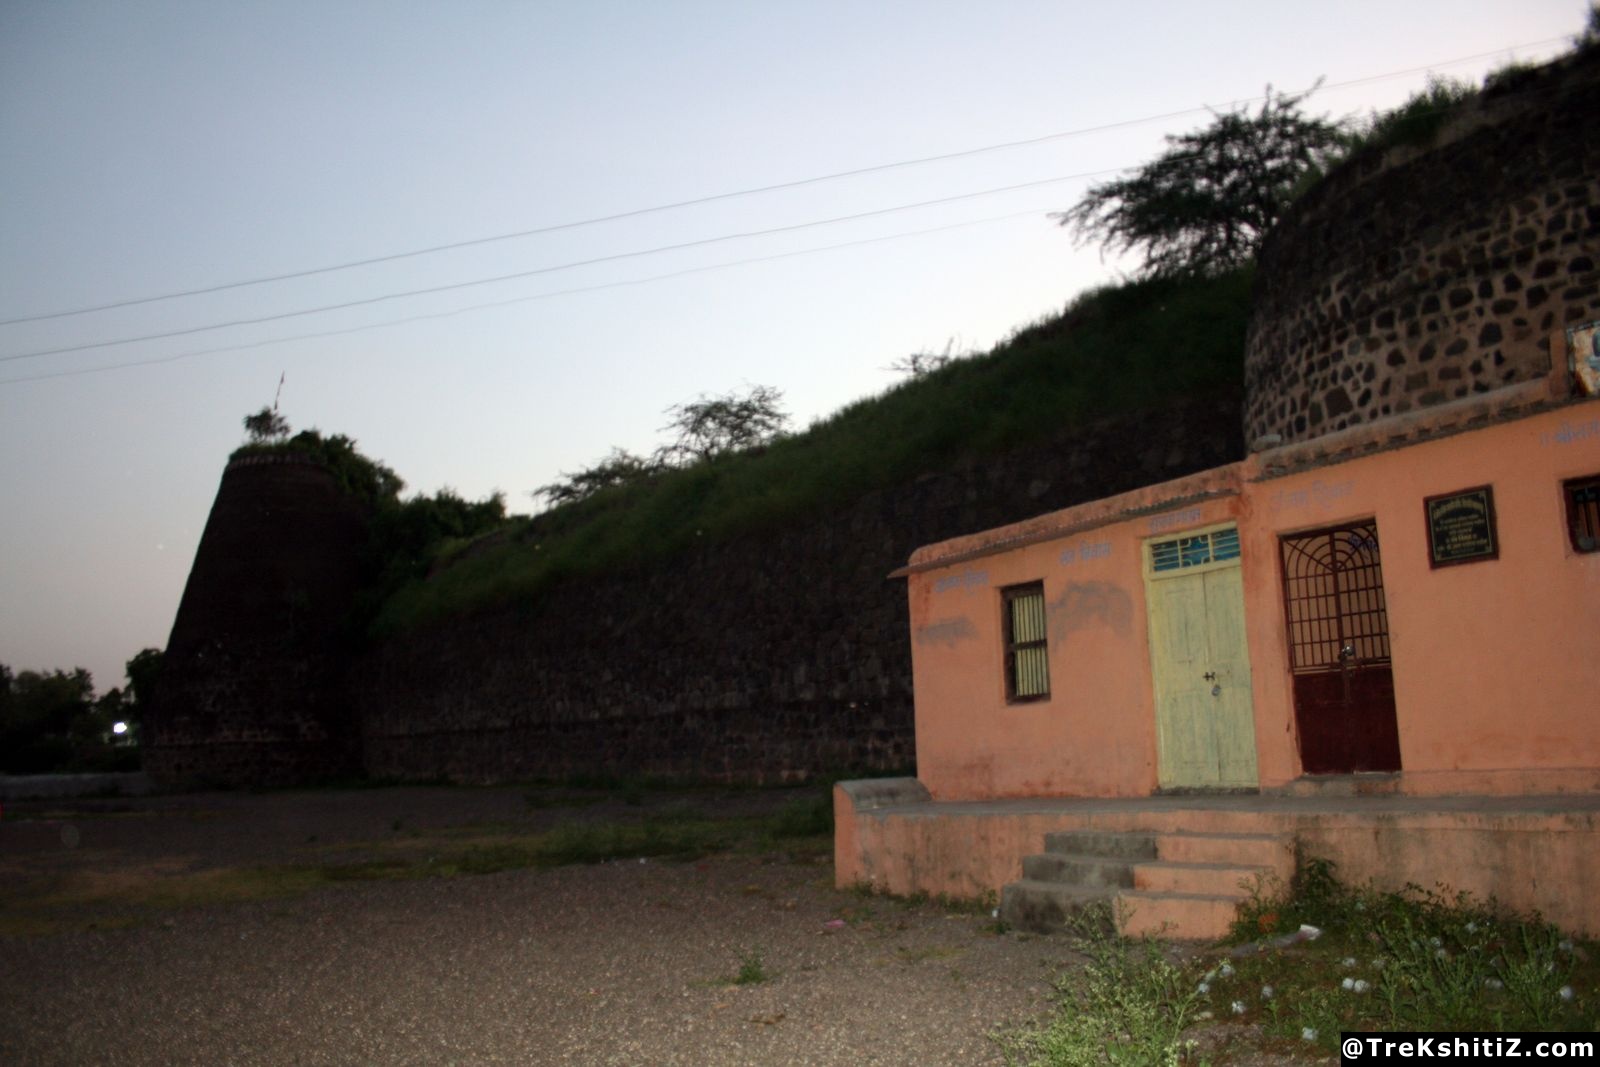 Bahadarpur Fort